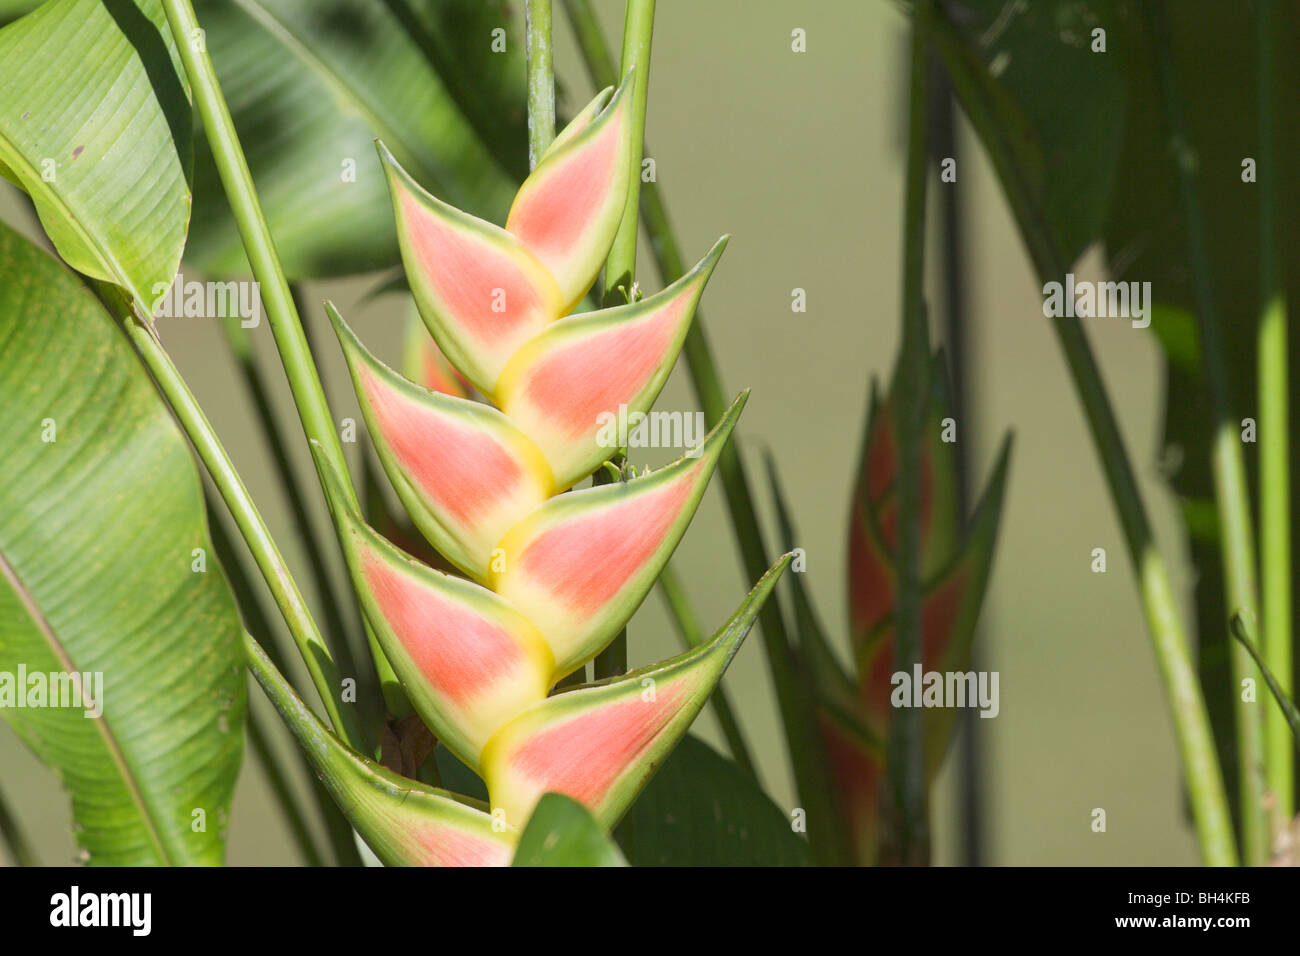 Wild plantain (Heliconia wagneriana). Stock Photo